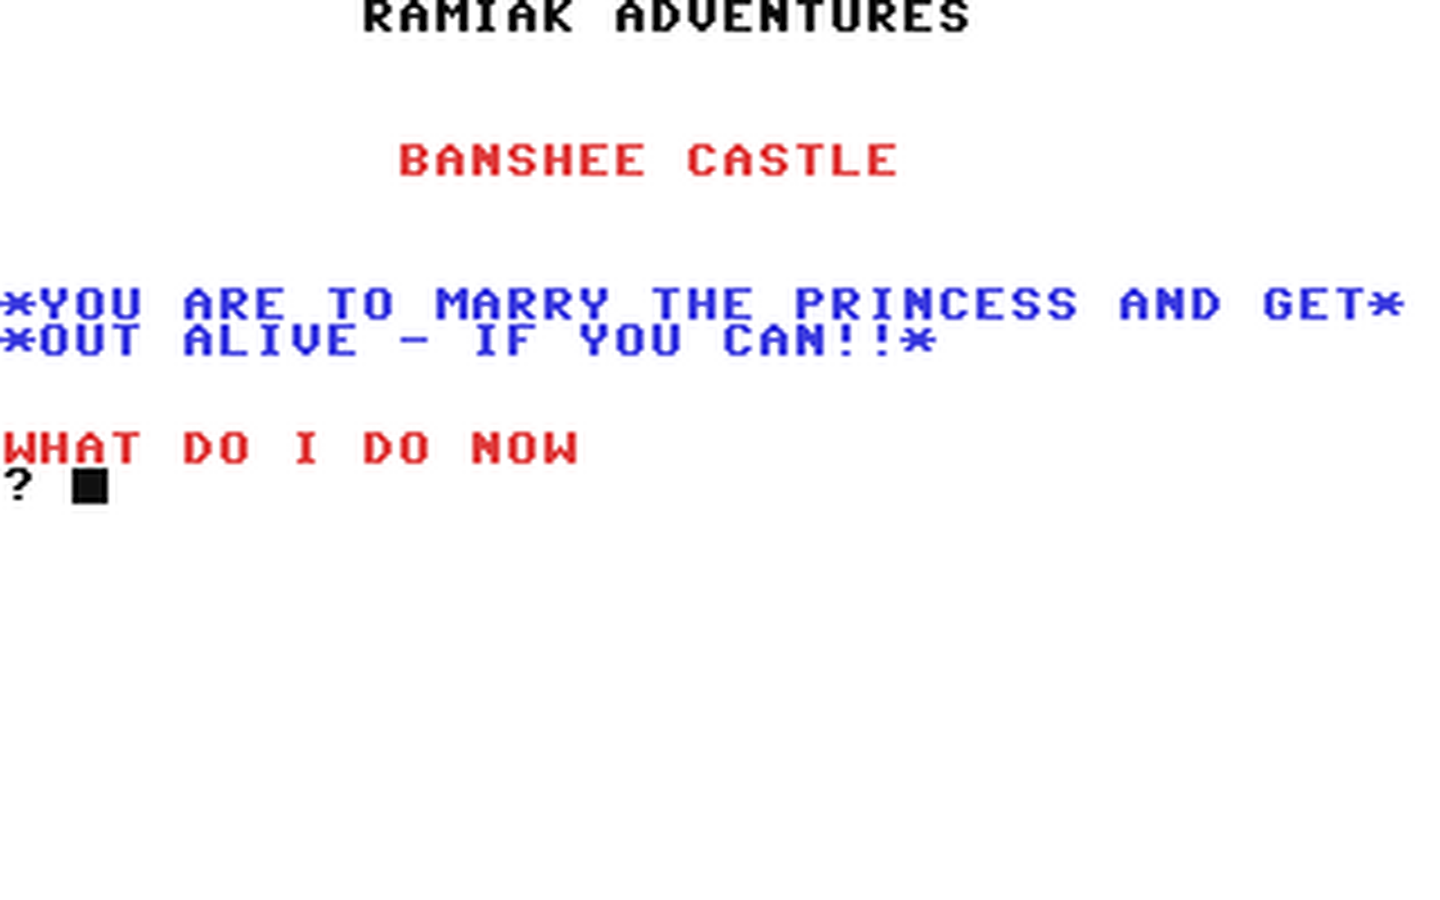 C64 GameBase Banshee_Castle Ramiak 1983